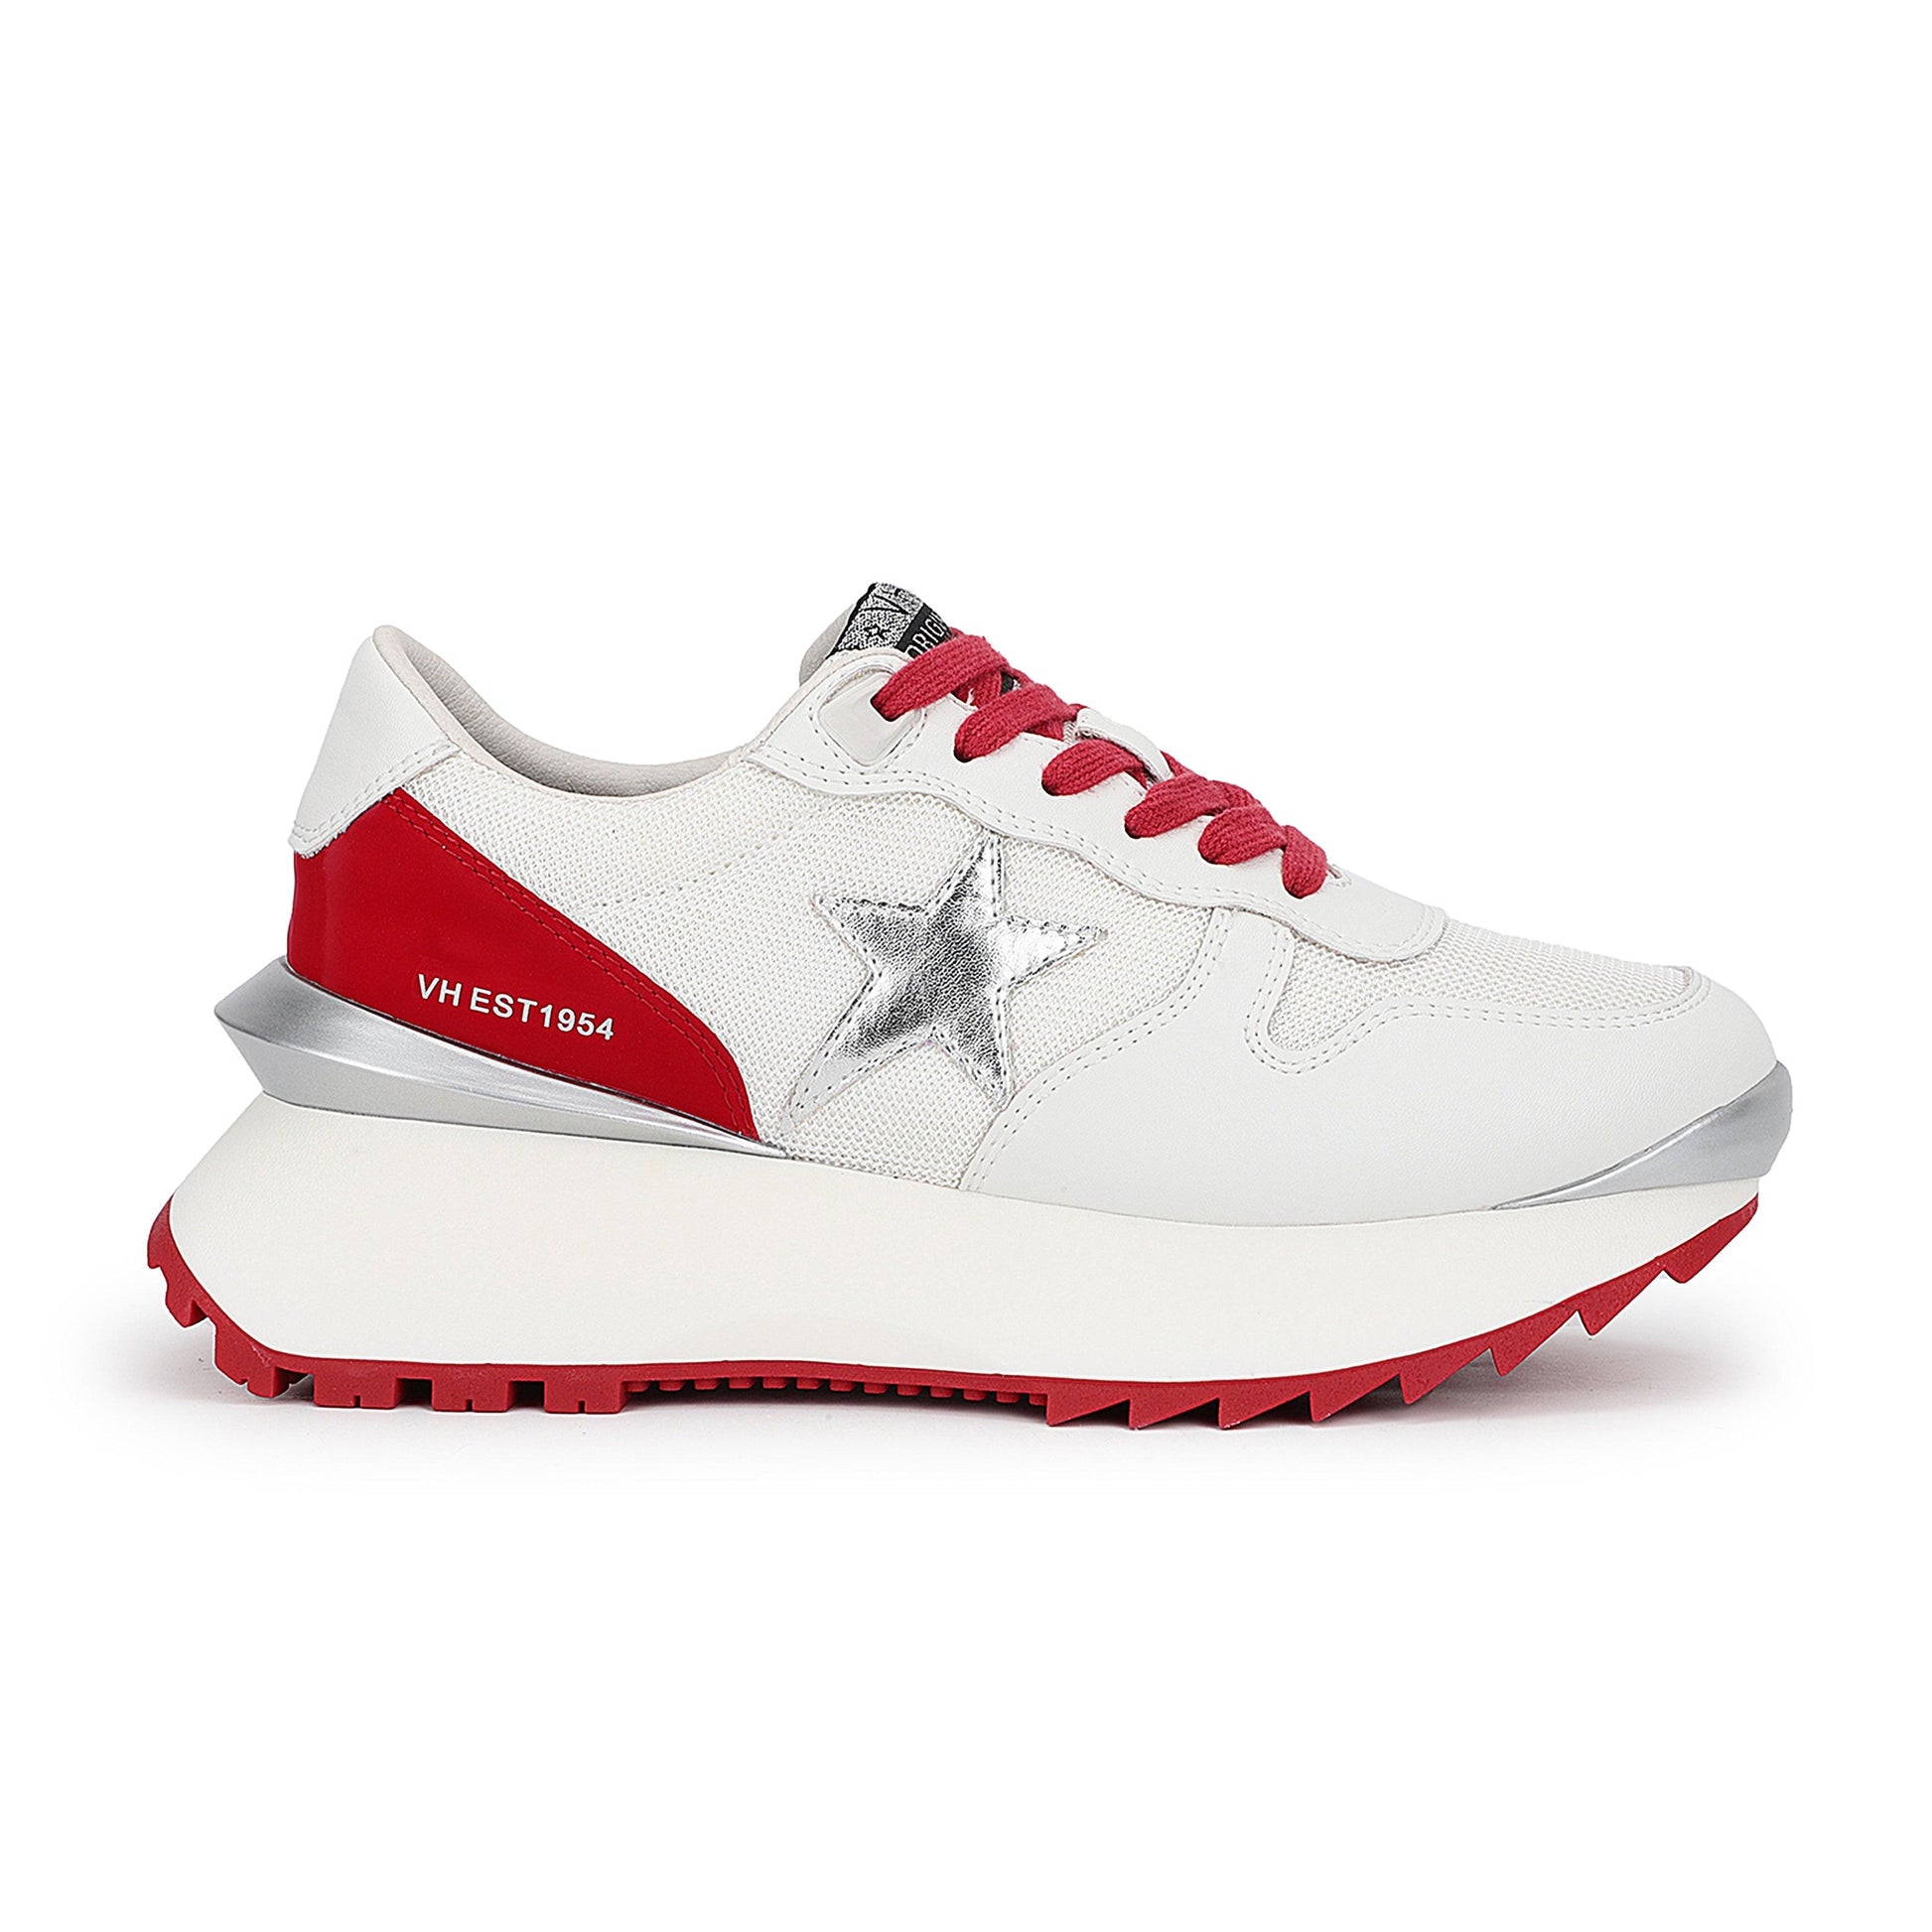 Major 18 White & Red Running Sneaker - Fairley Fancy 